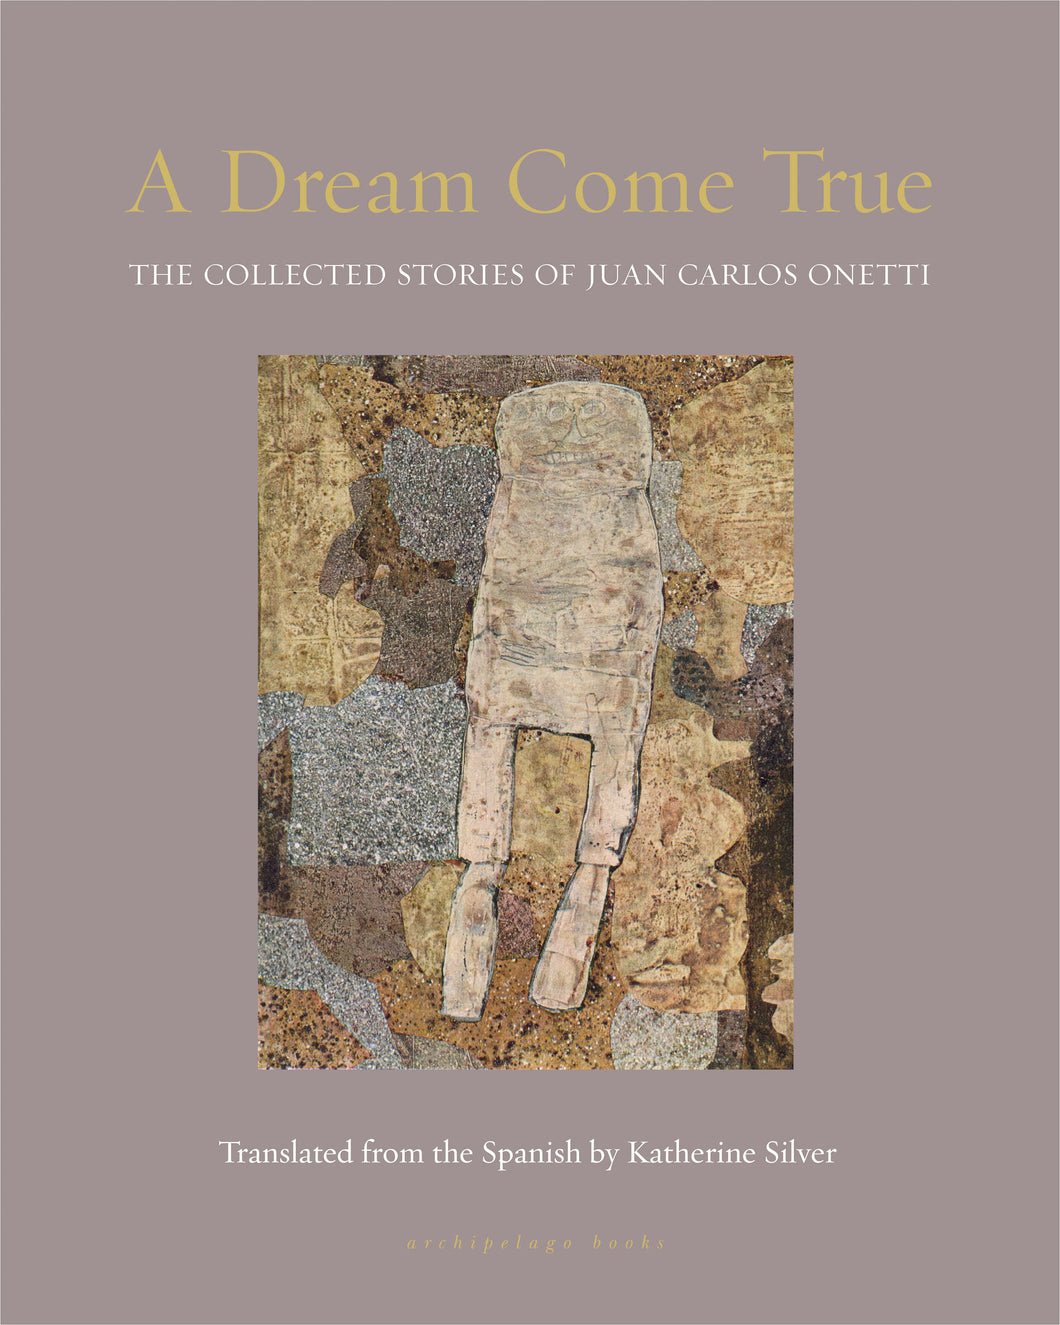 A Dream Come True : The Collected Stories of Juan Carlos Onetti ร้านหนังสือและสิ่งของ เป็นร้านหนังสือภาษาอังกฤษหายาก และร้านกาแฟ หรือ บุ๊คคาเฟ่ ตั้งอยู่สุขุมวิท กรุงเทพ